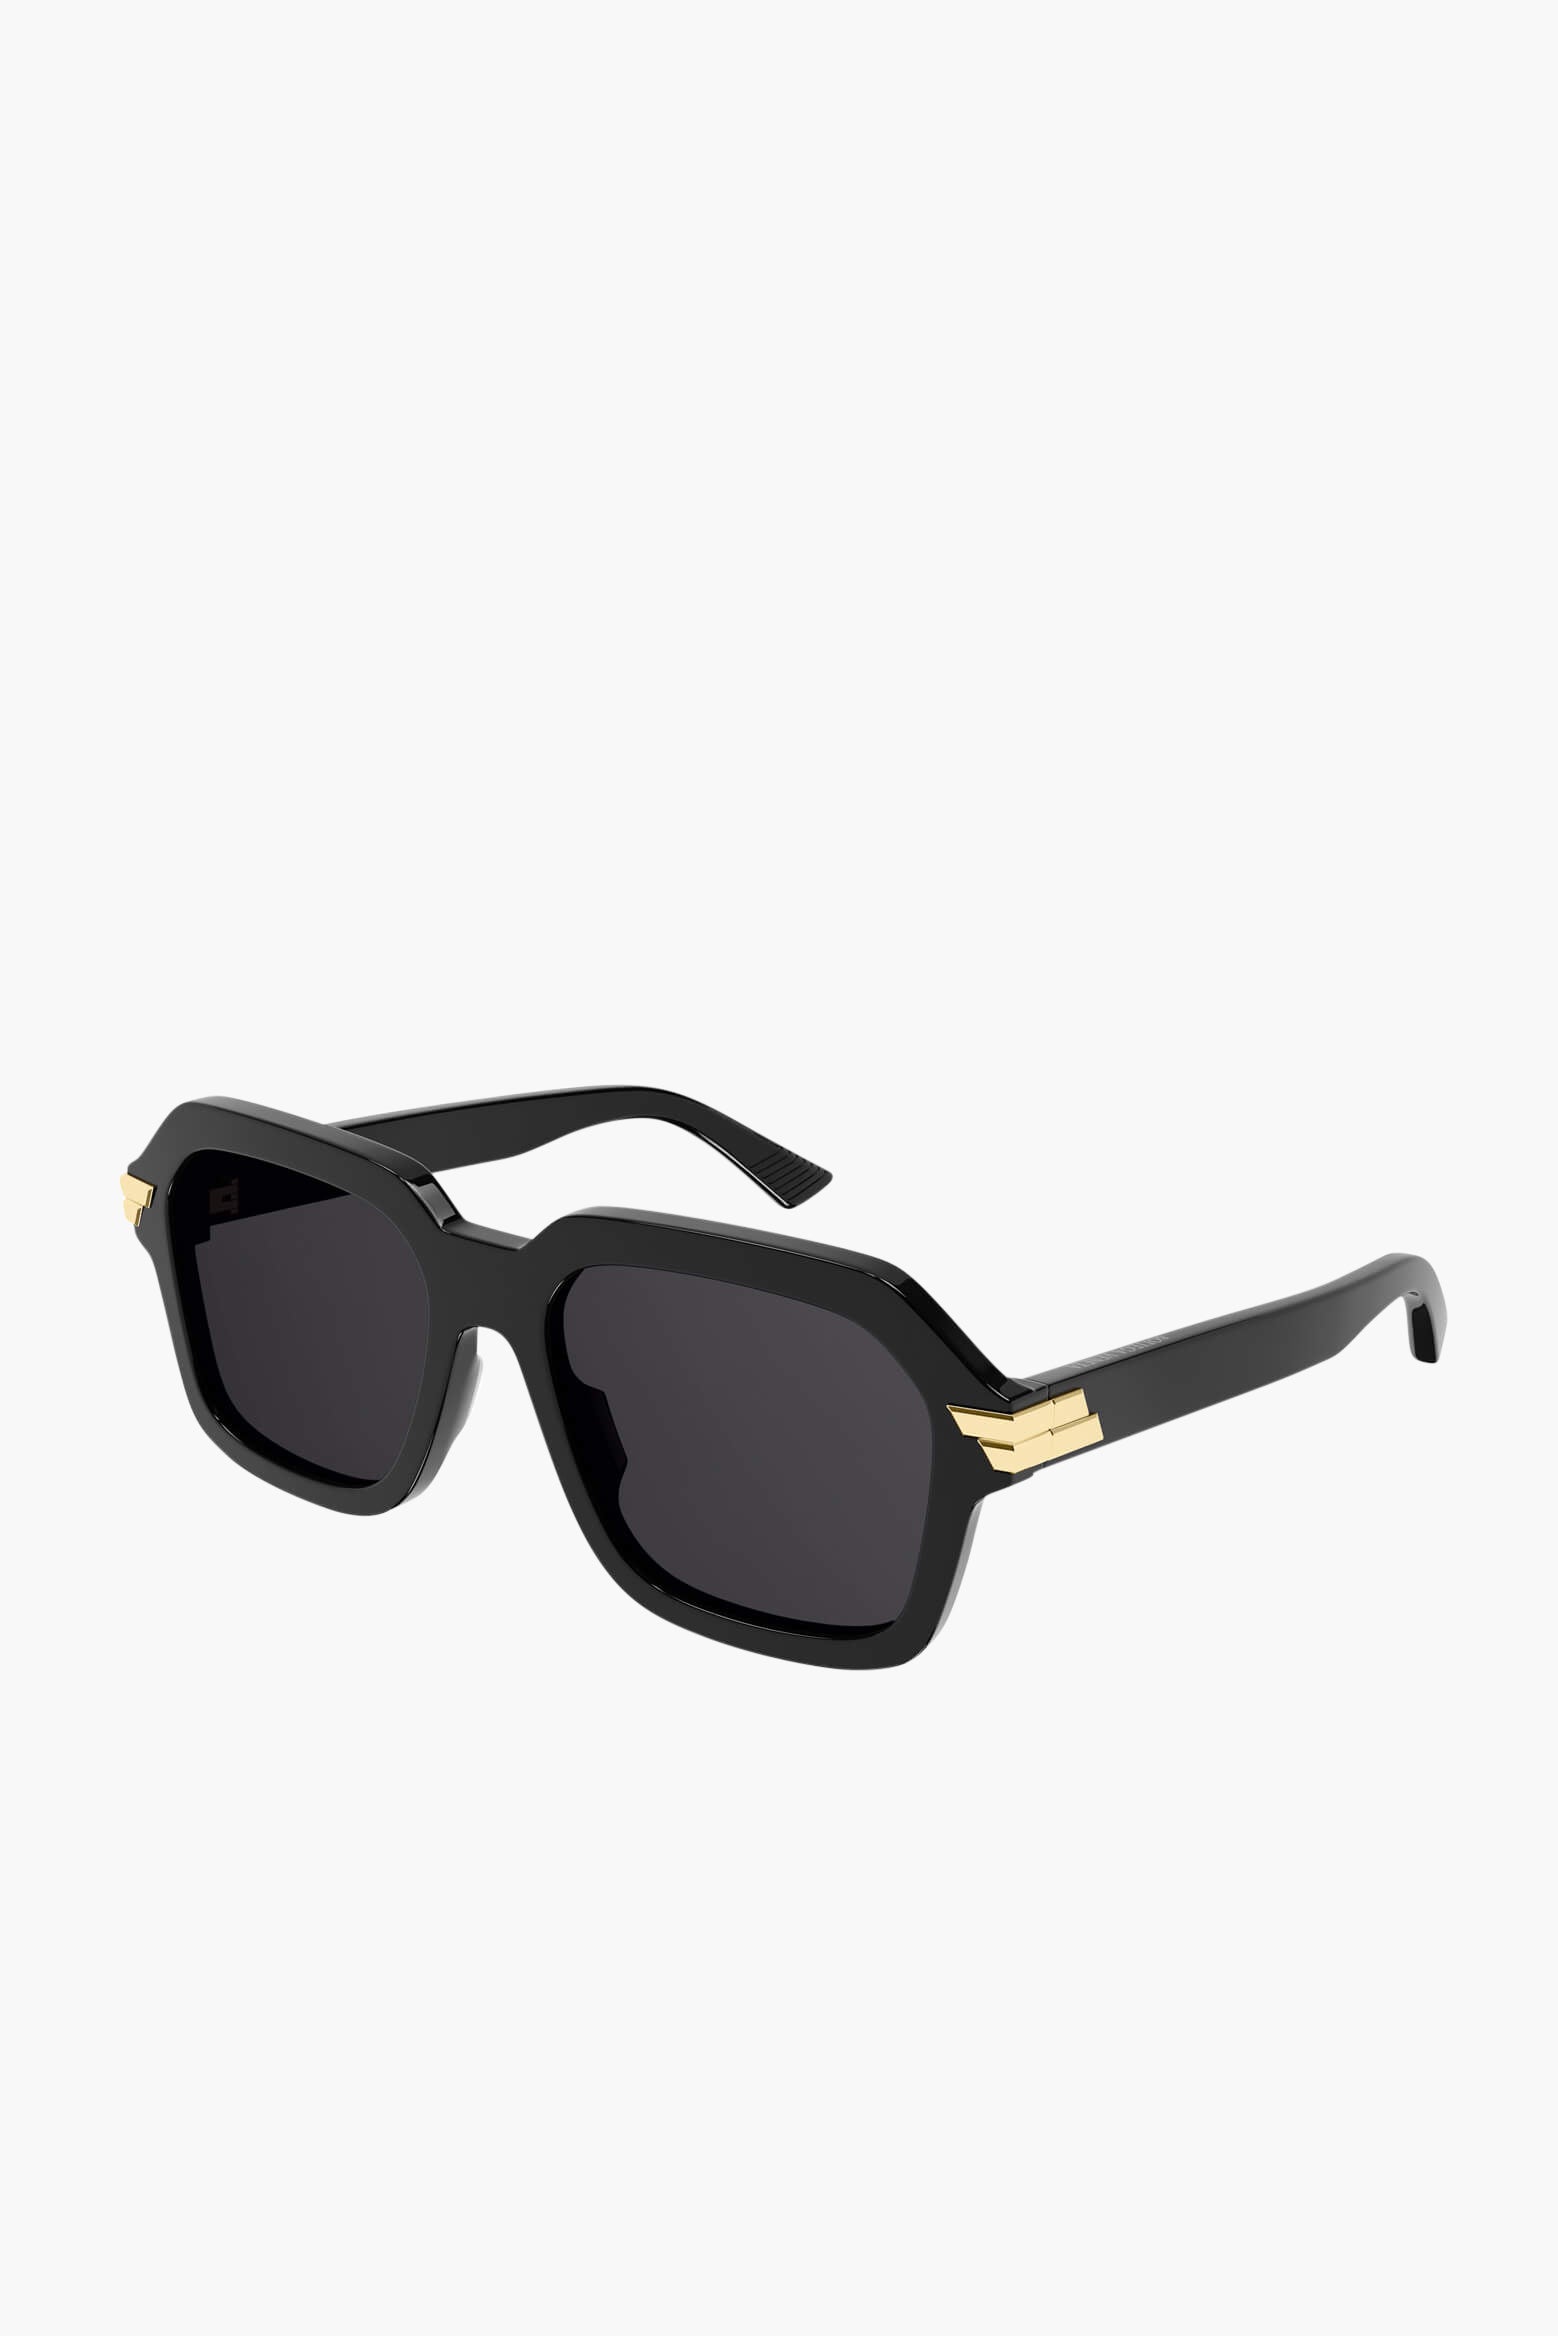 Bottega Veneta Bold Ribbon Acetate Sunglasses in Black available at The New Trend